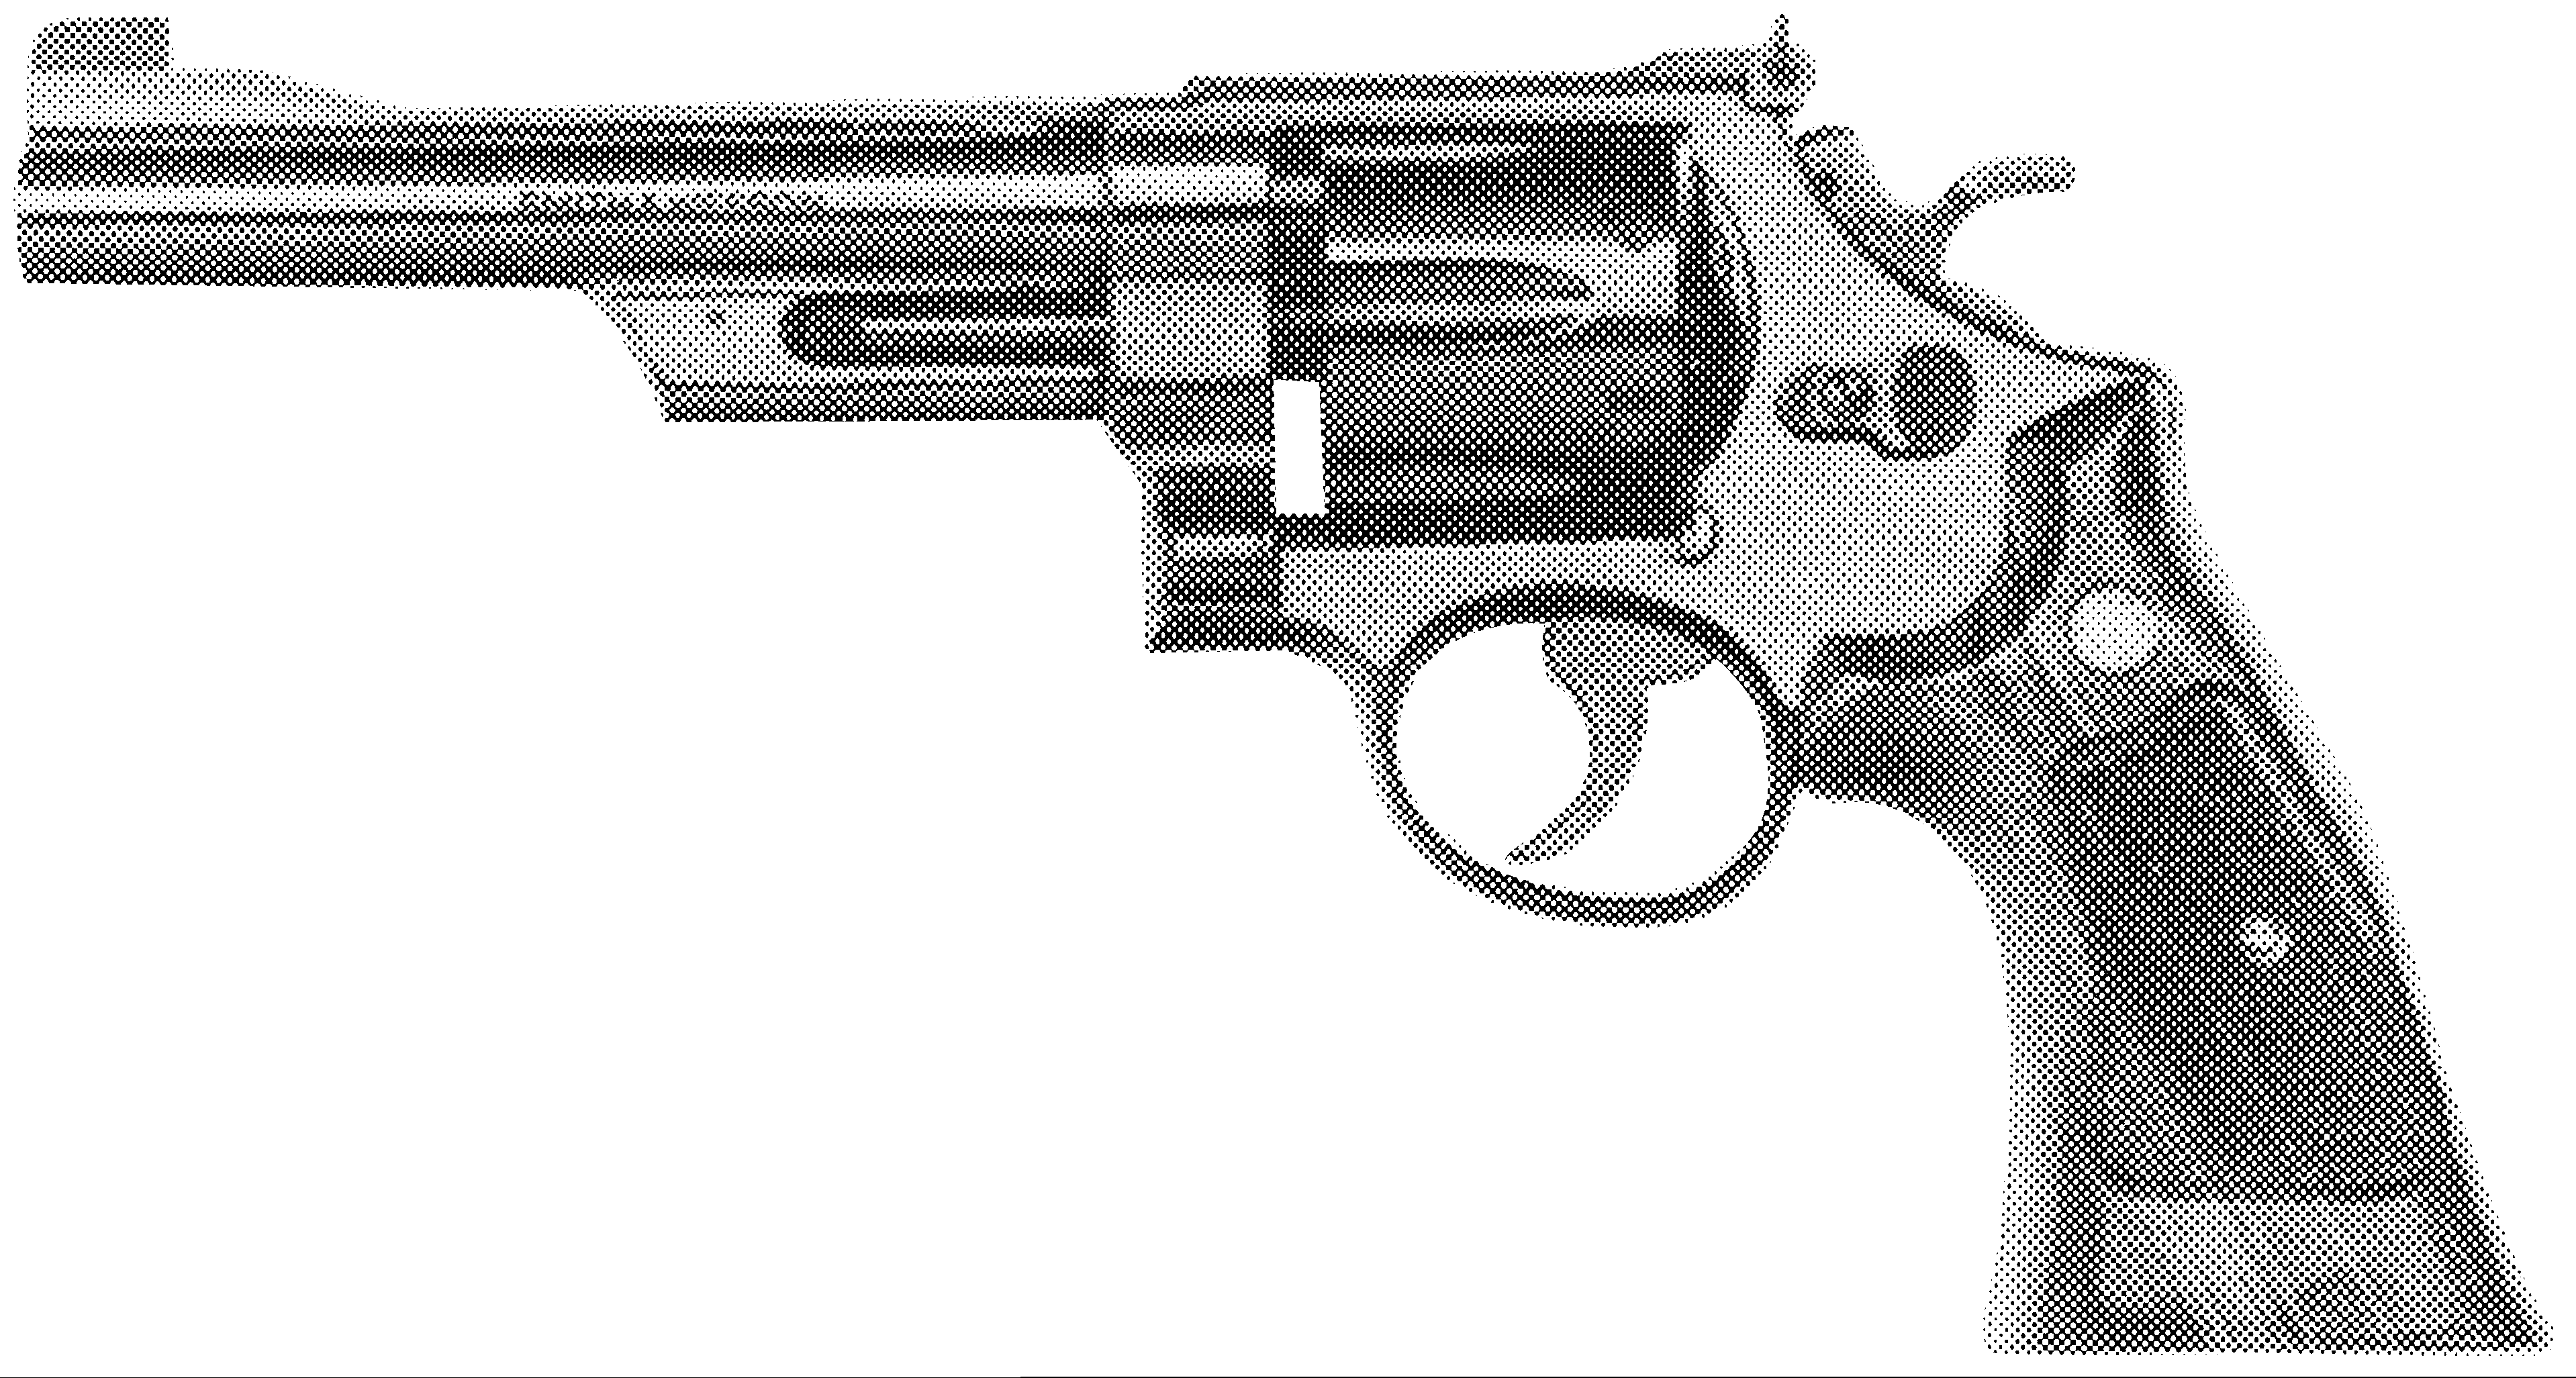 Model 27 (.357 Magnum)